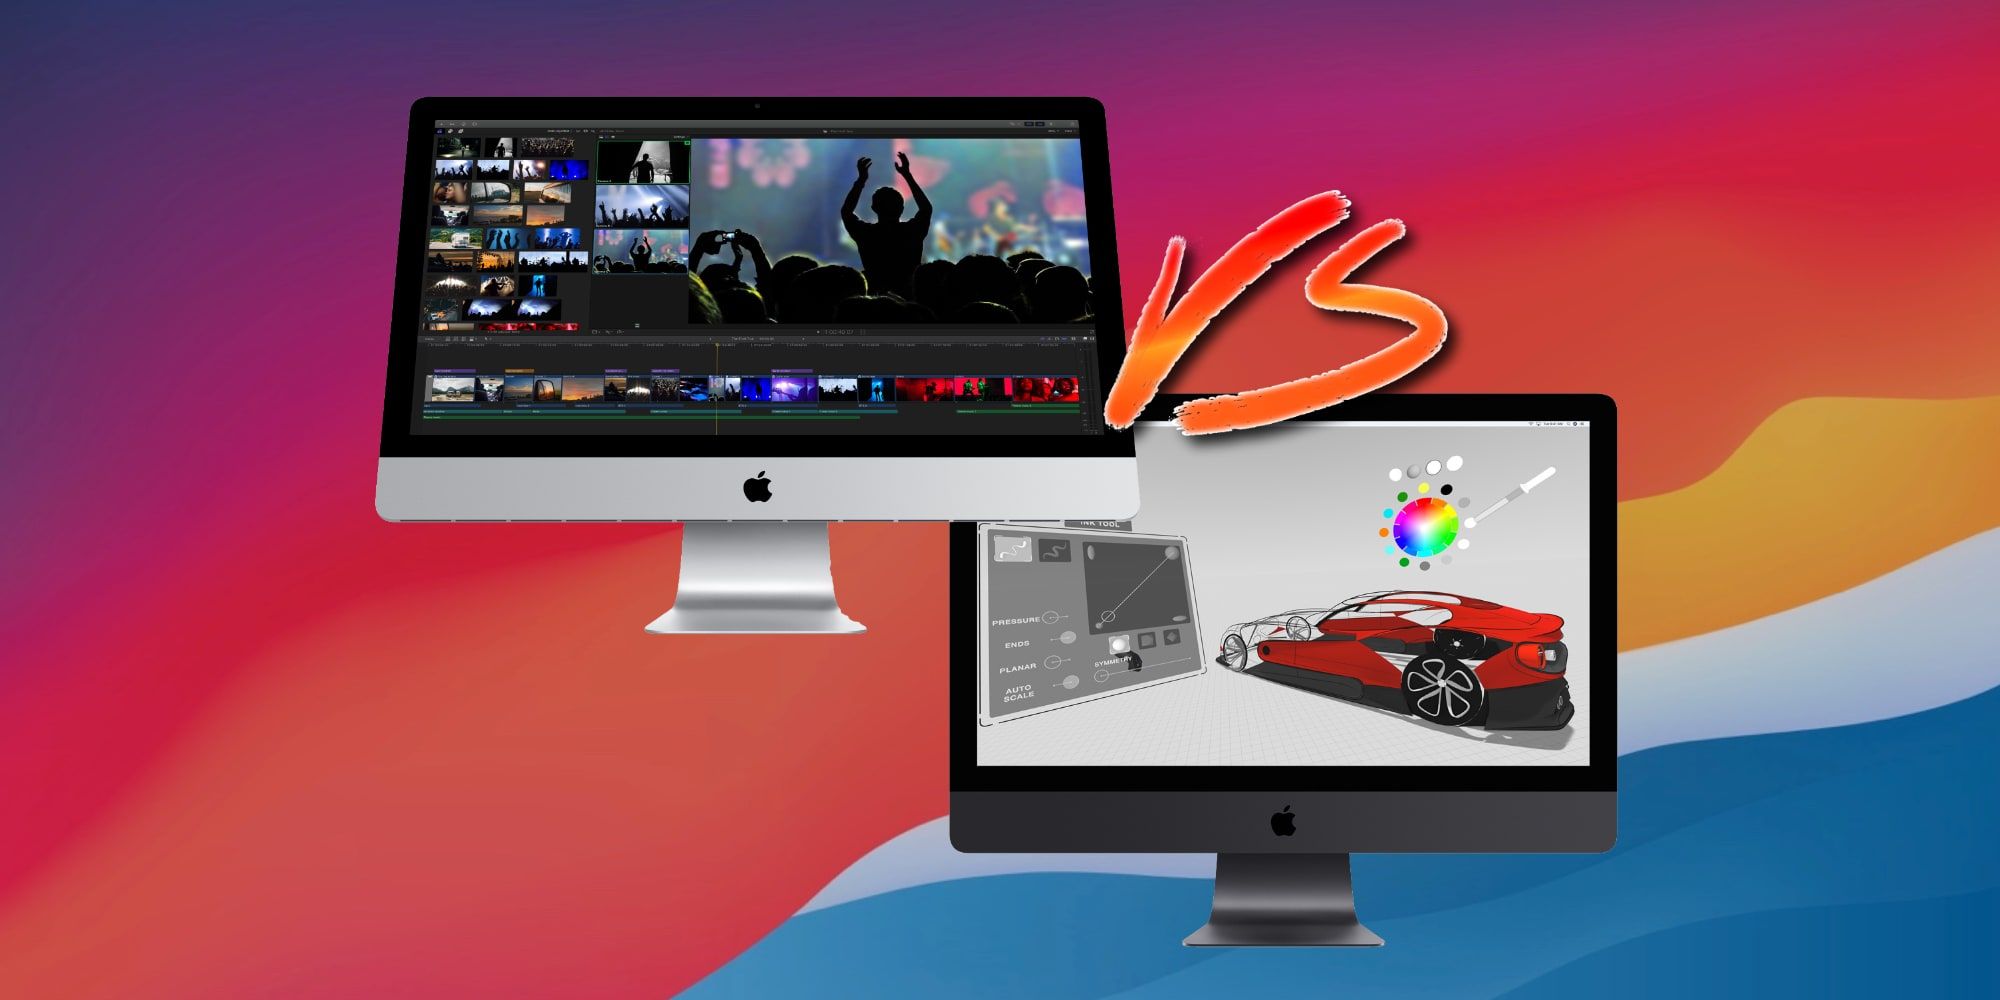 Apple 27-inch iMac VS iMac Pro